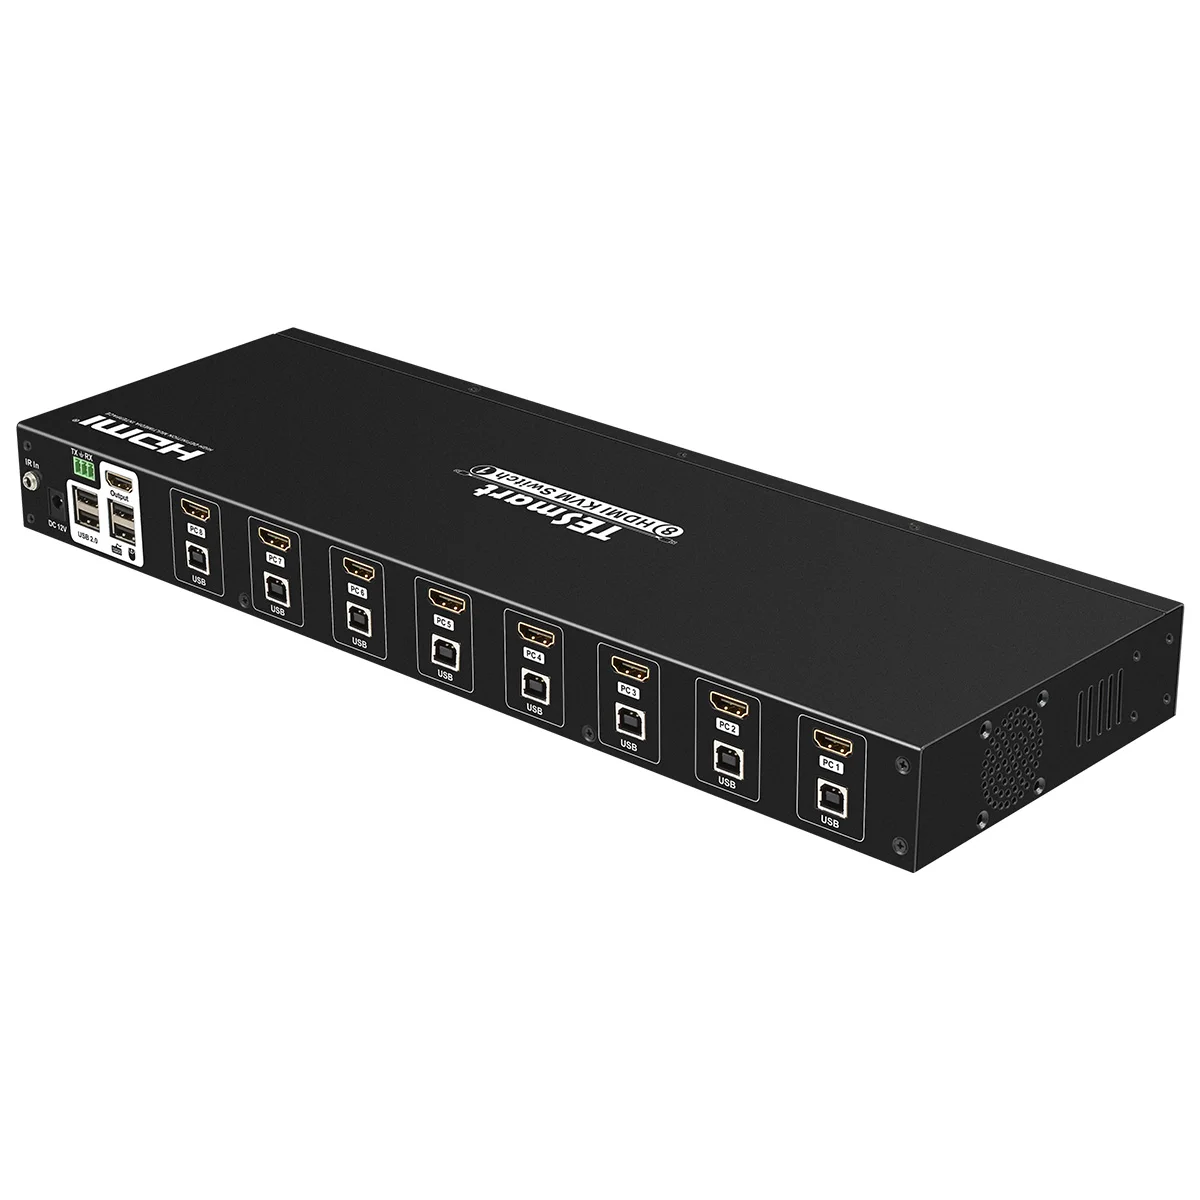 TESmart HDMI KVM переключатель 8 порты и разъёмы поддержка 3840*2160/4 к 2 шт. стойки уши Стандартный 1U управление восемь серверов w/один видео мониторы